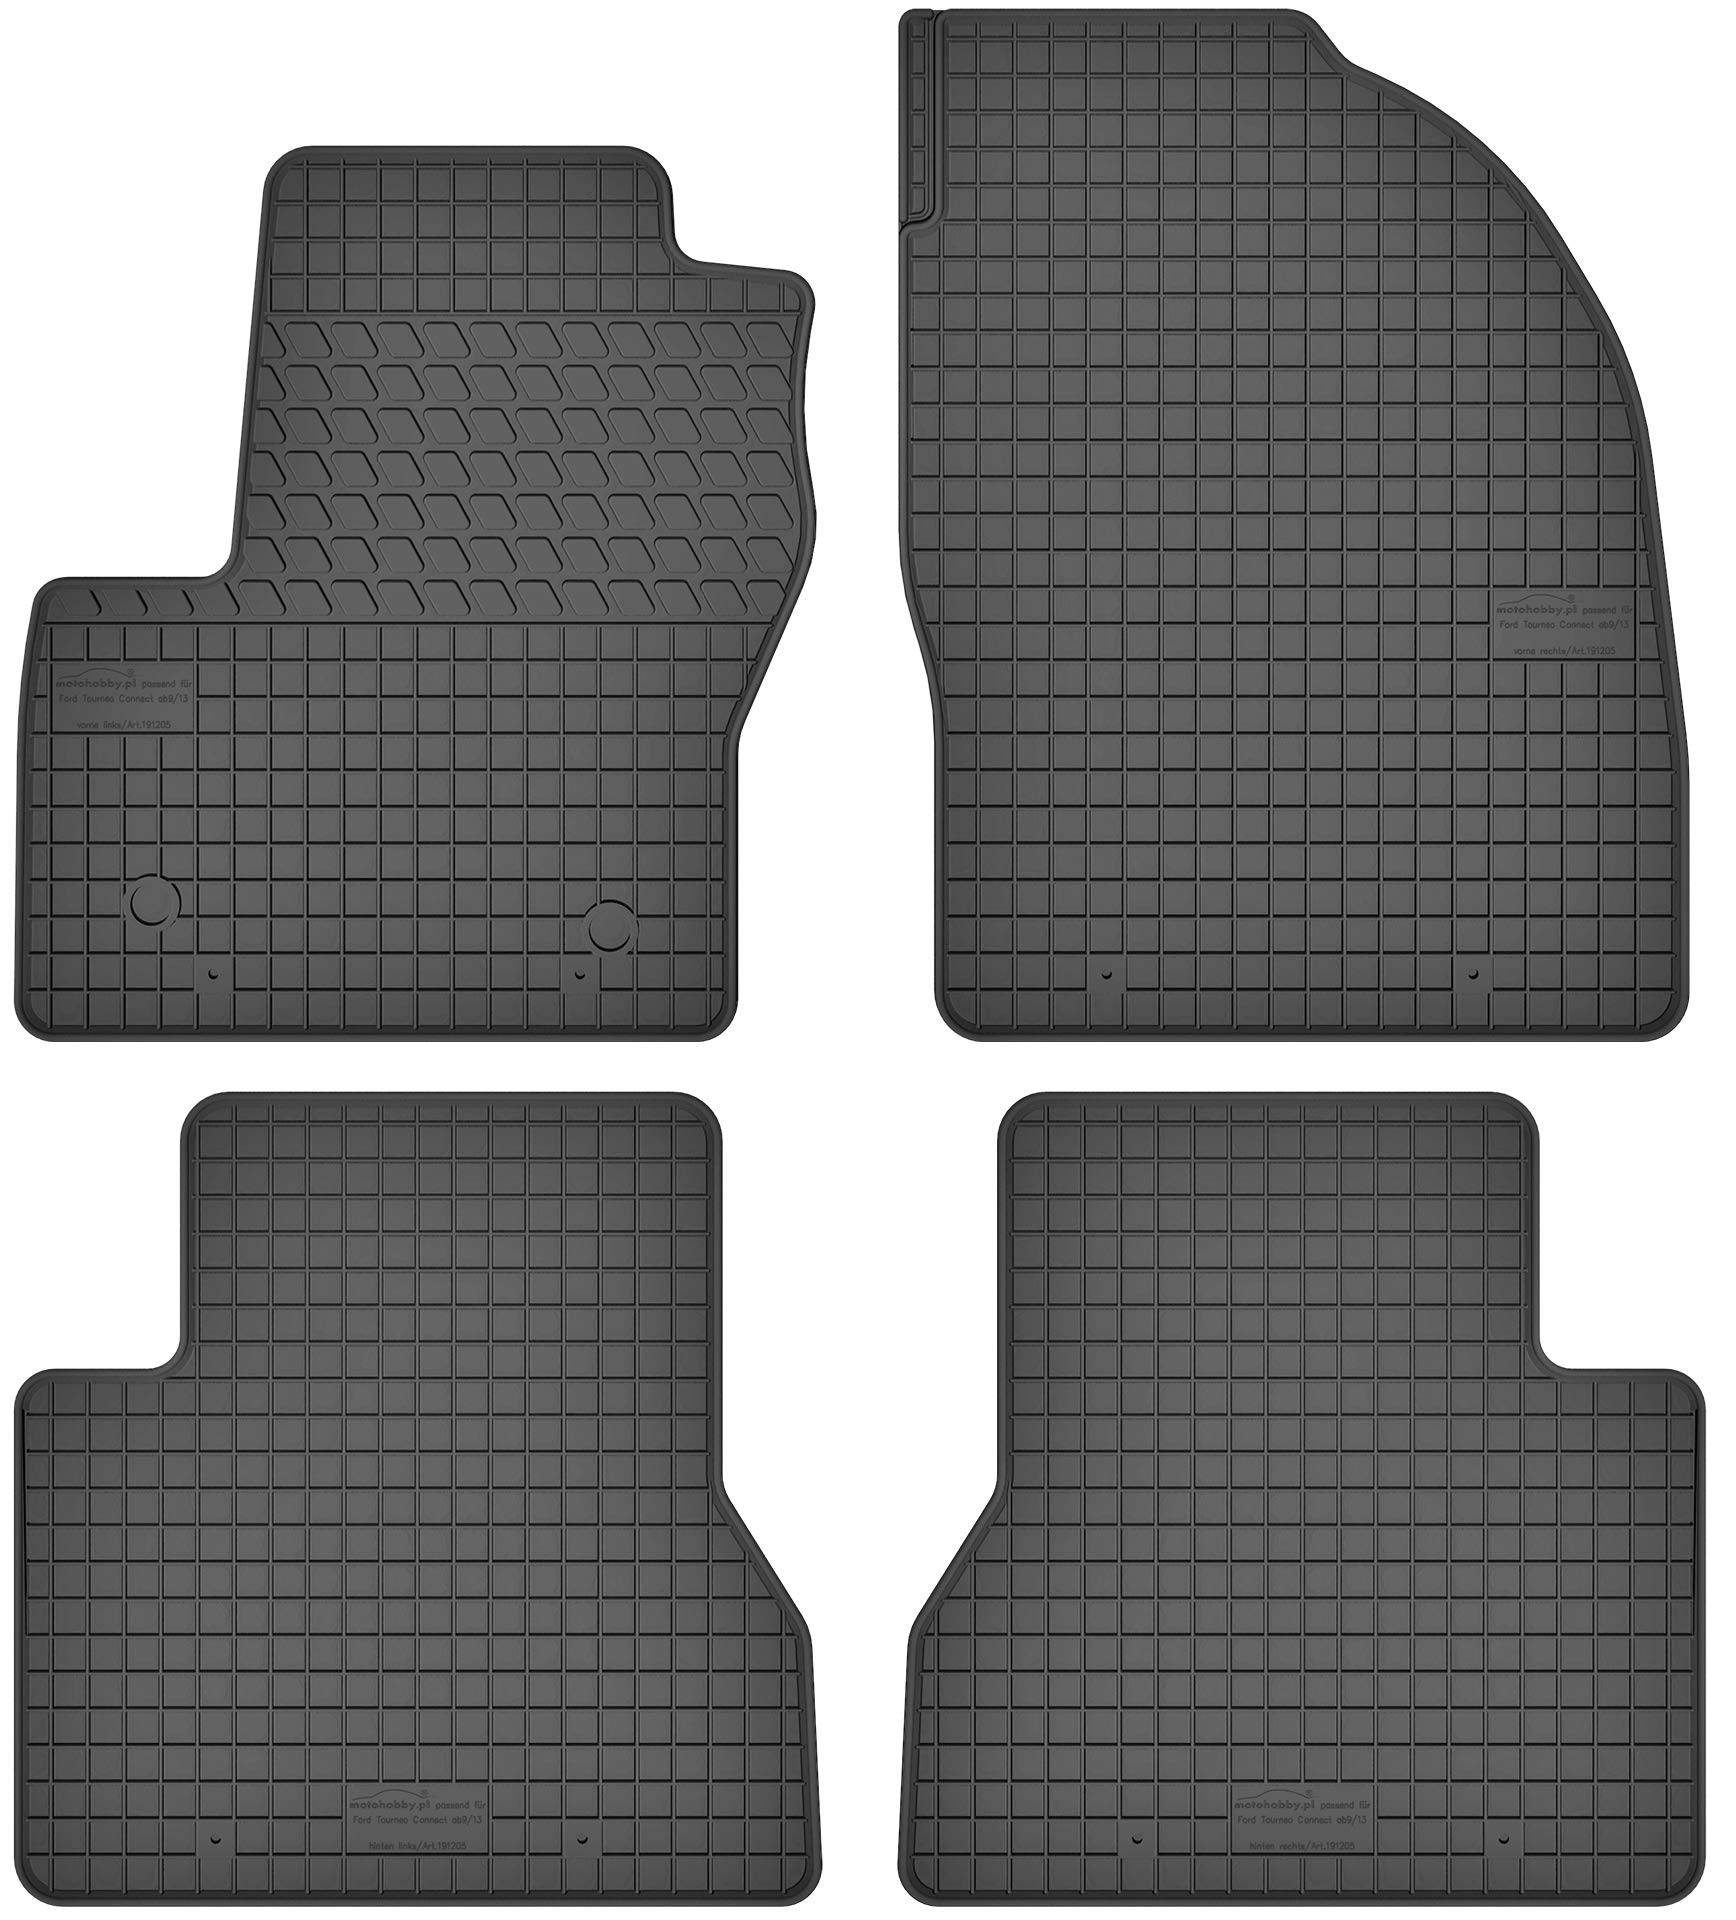 Gummimatten Gummi Fußmatten Satz für Ford Tourneo Connect II (ab 2013) - Passgenau